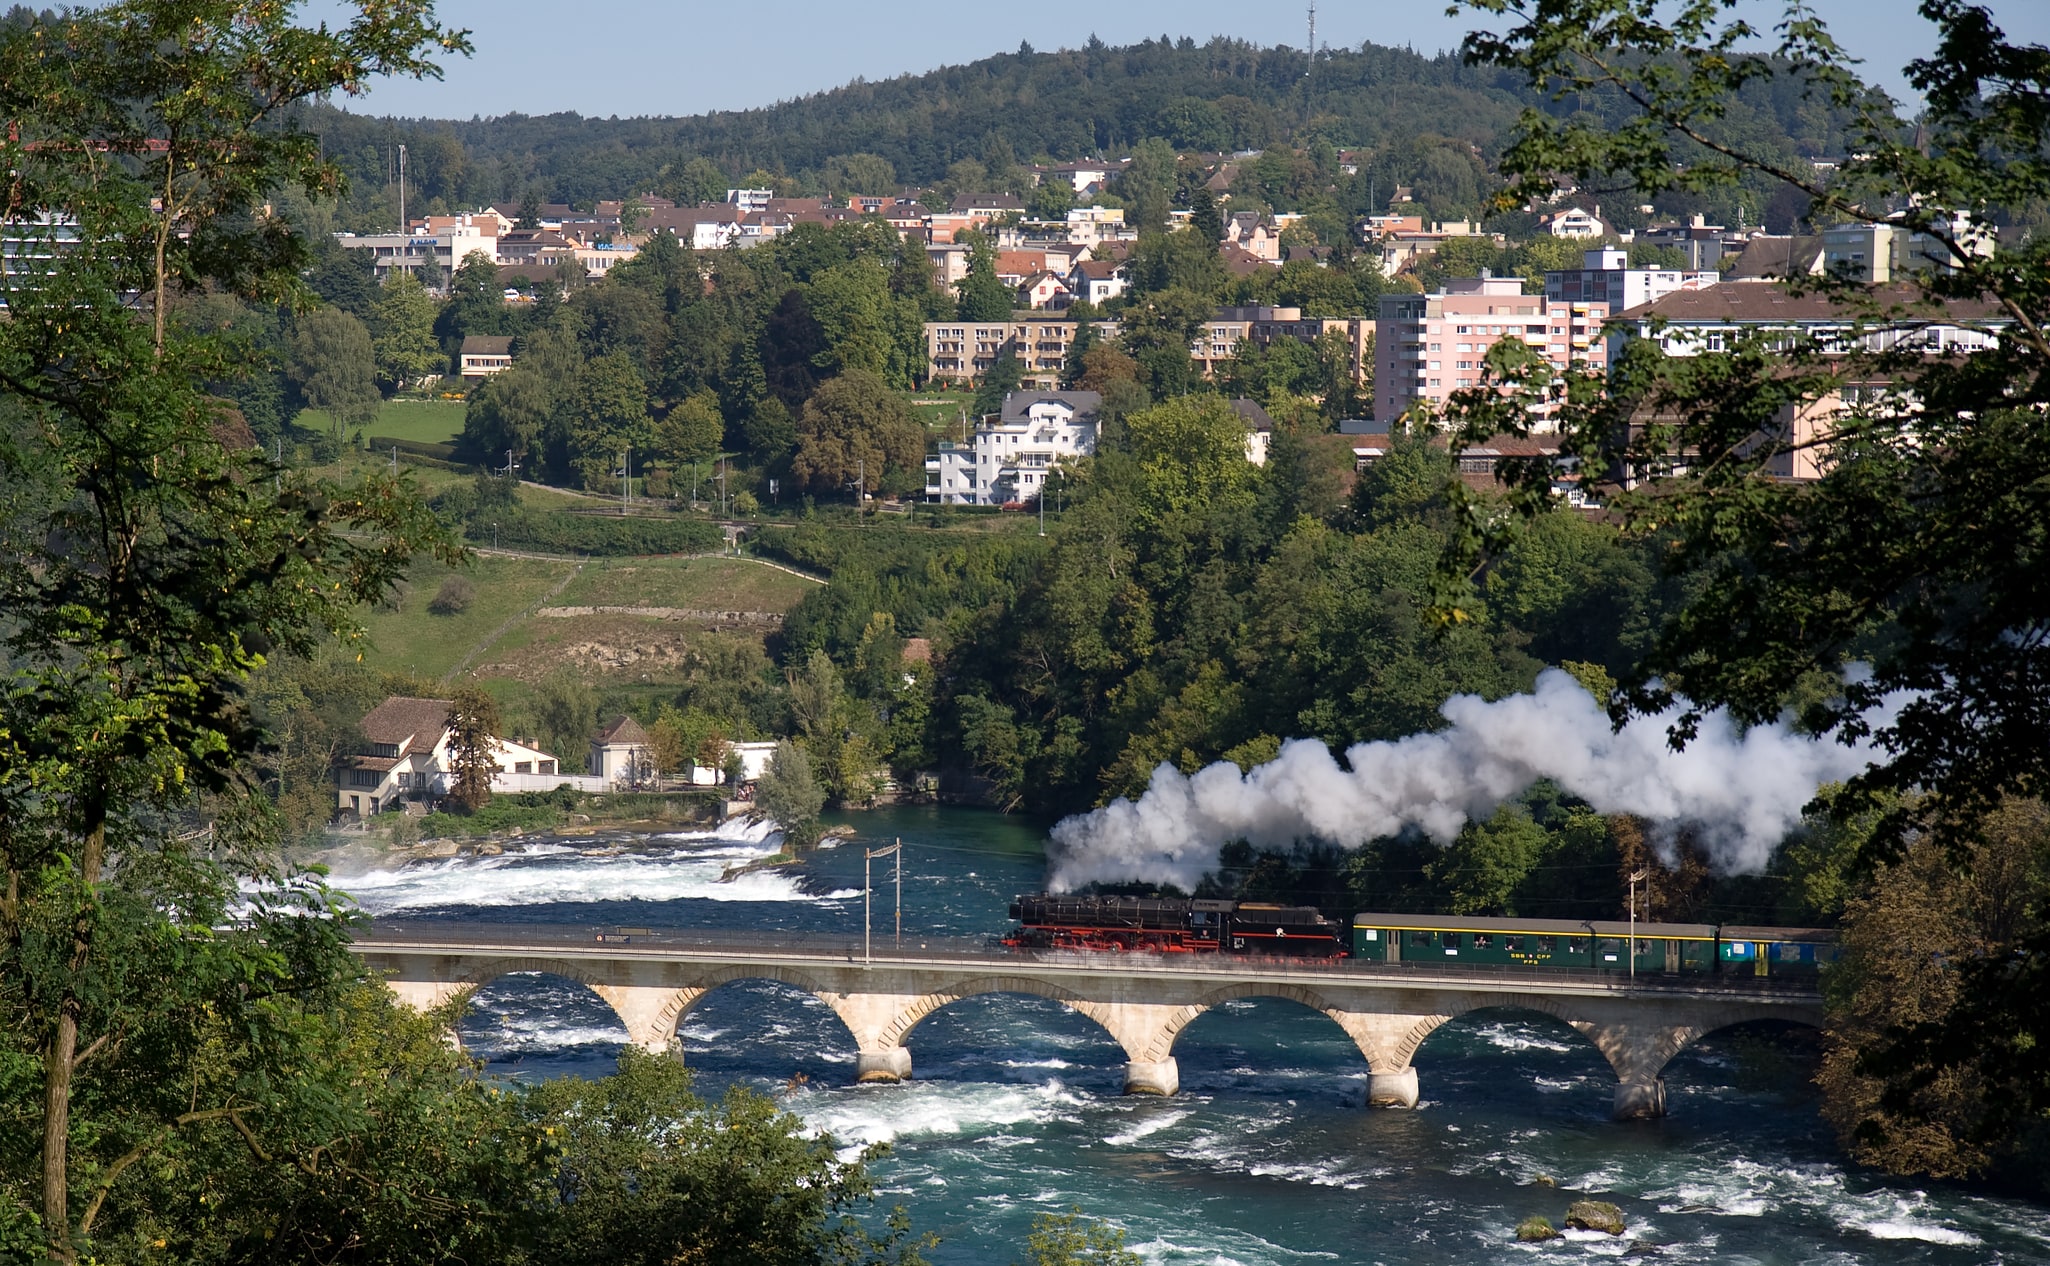 Neuhausen am Rheinfall, Switzerland